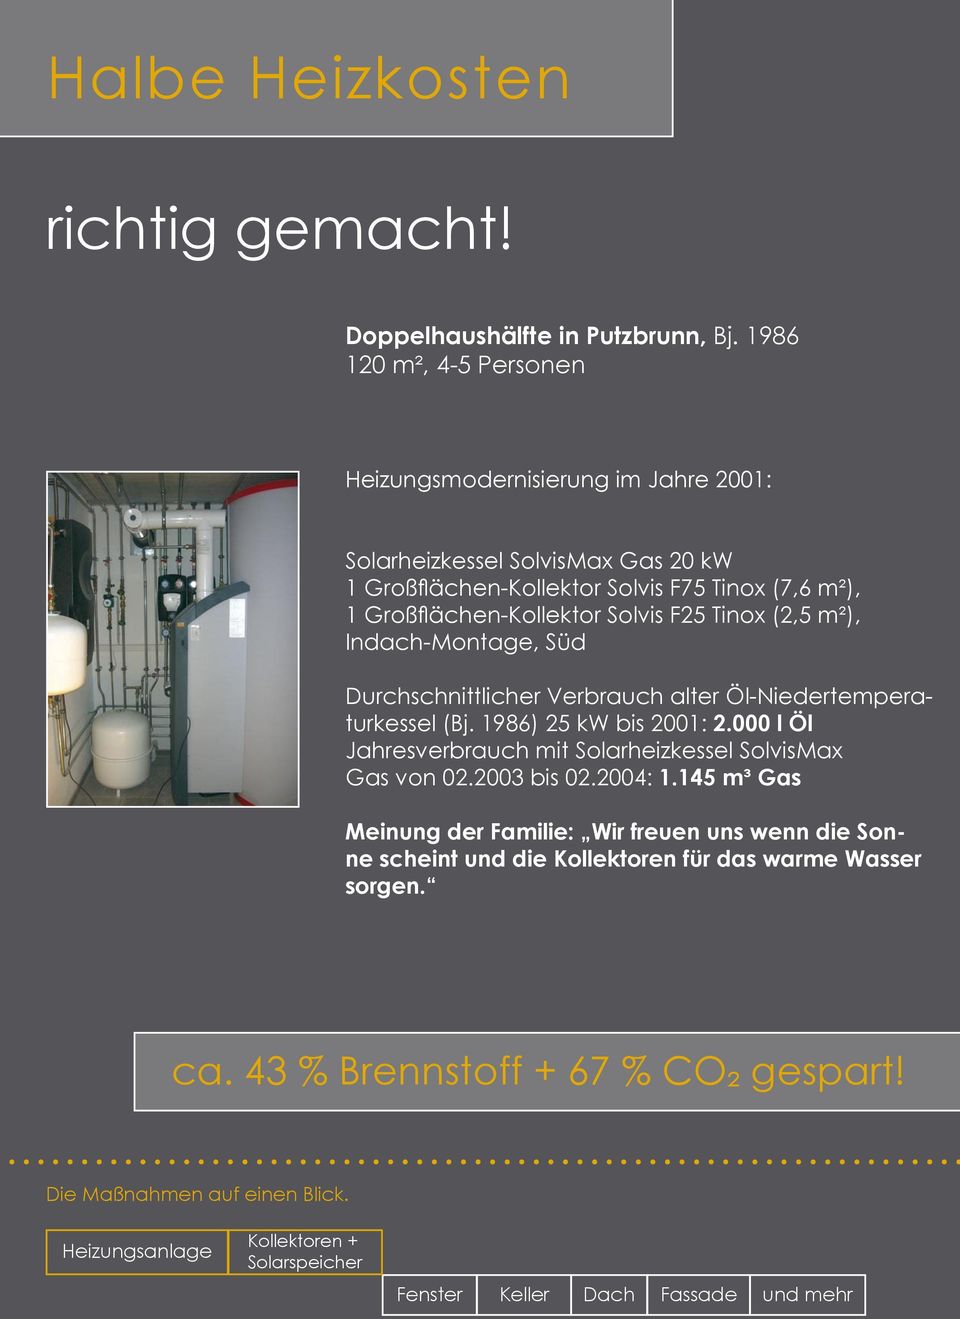 F25 Tinox (2,5 m²), Indach-Montage, Süd Durchschnittlicher Verbrauch alter Öl-Niedertemperaturkessel (Bj. 1986) 25 kw bis 2001: 2.